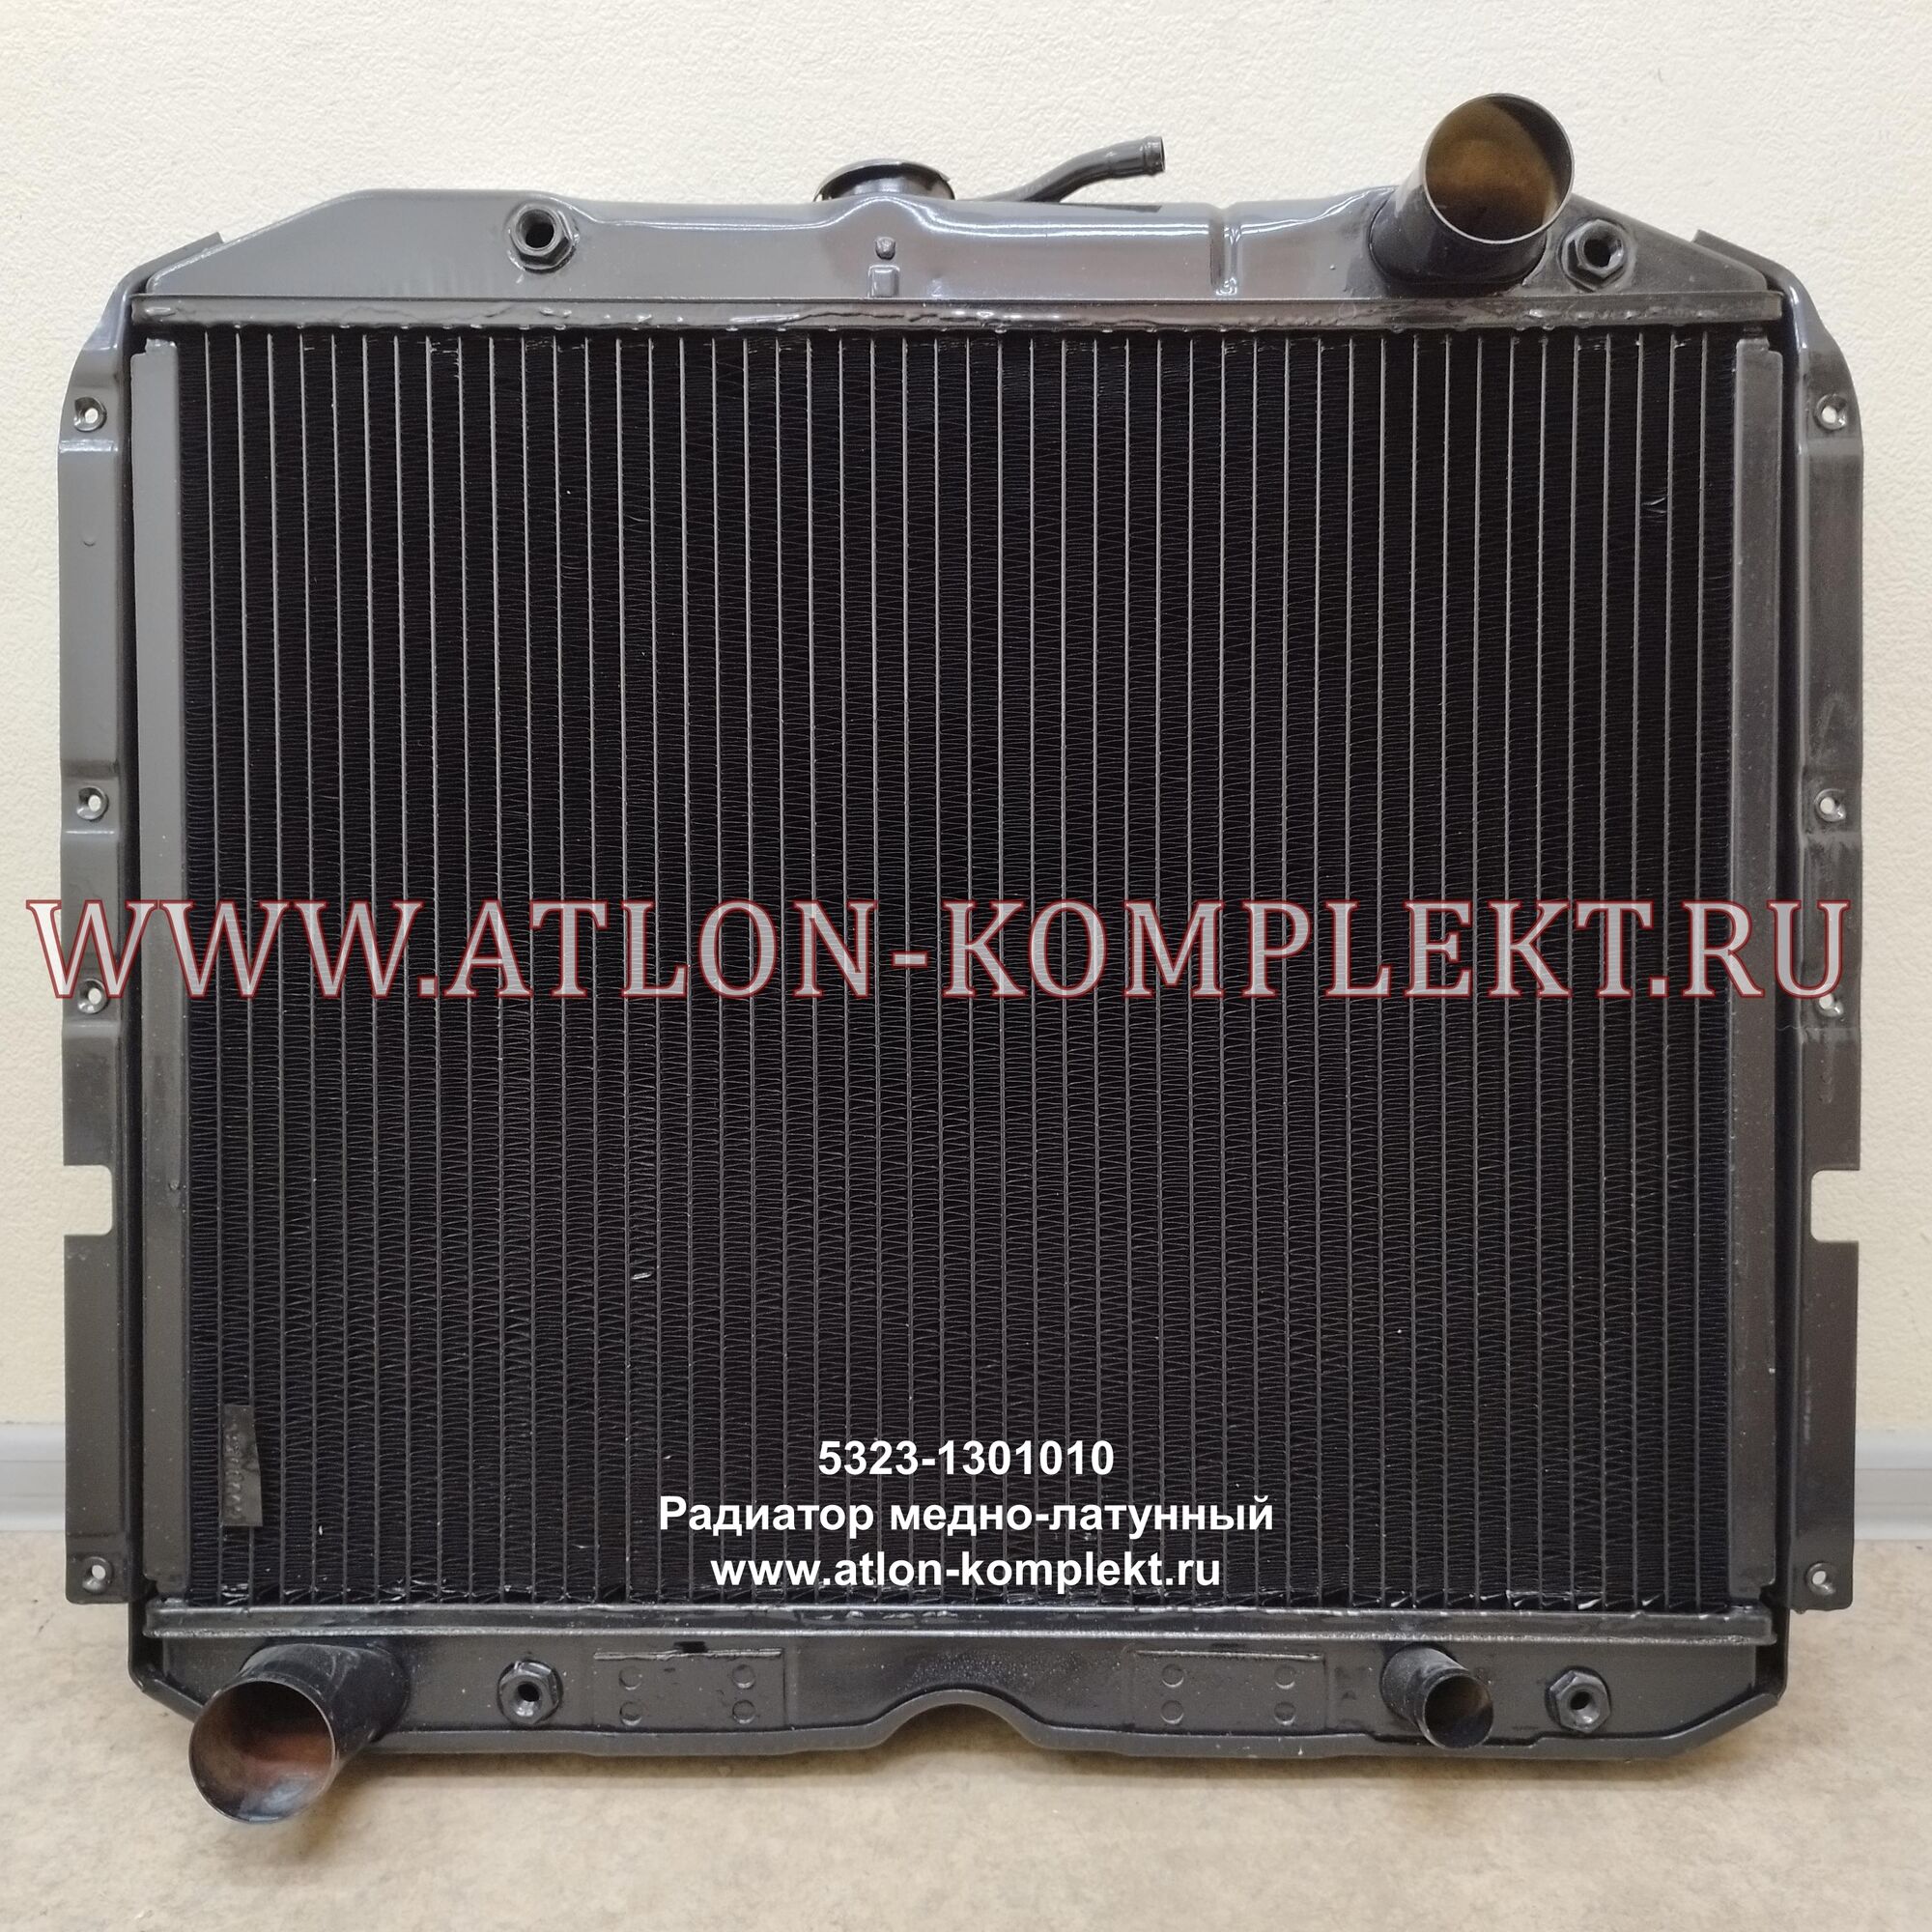 Радиатор УРАЛ-4320 УРАЛ-5323 с ДВС КАМАЗ-740 медный 5323-1301010 4-х рядный